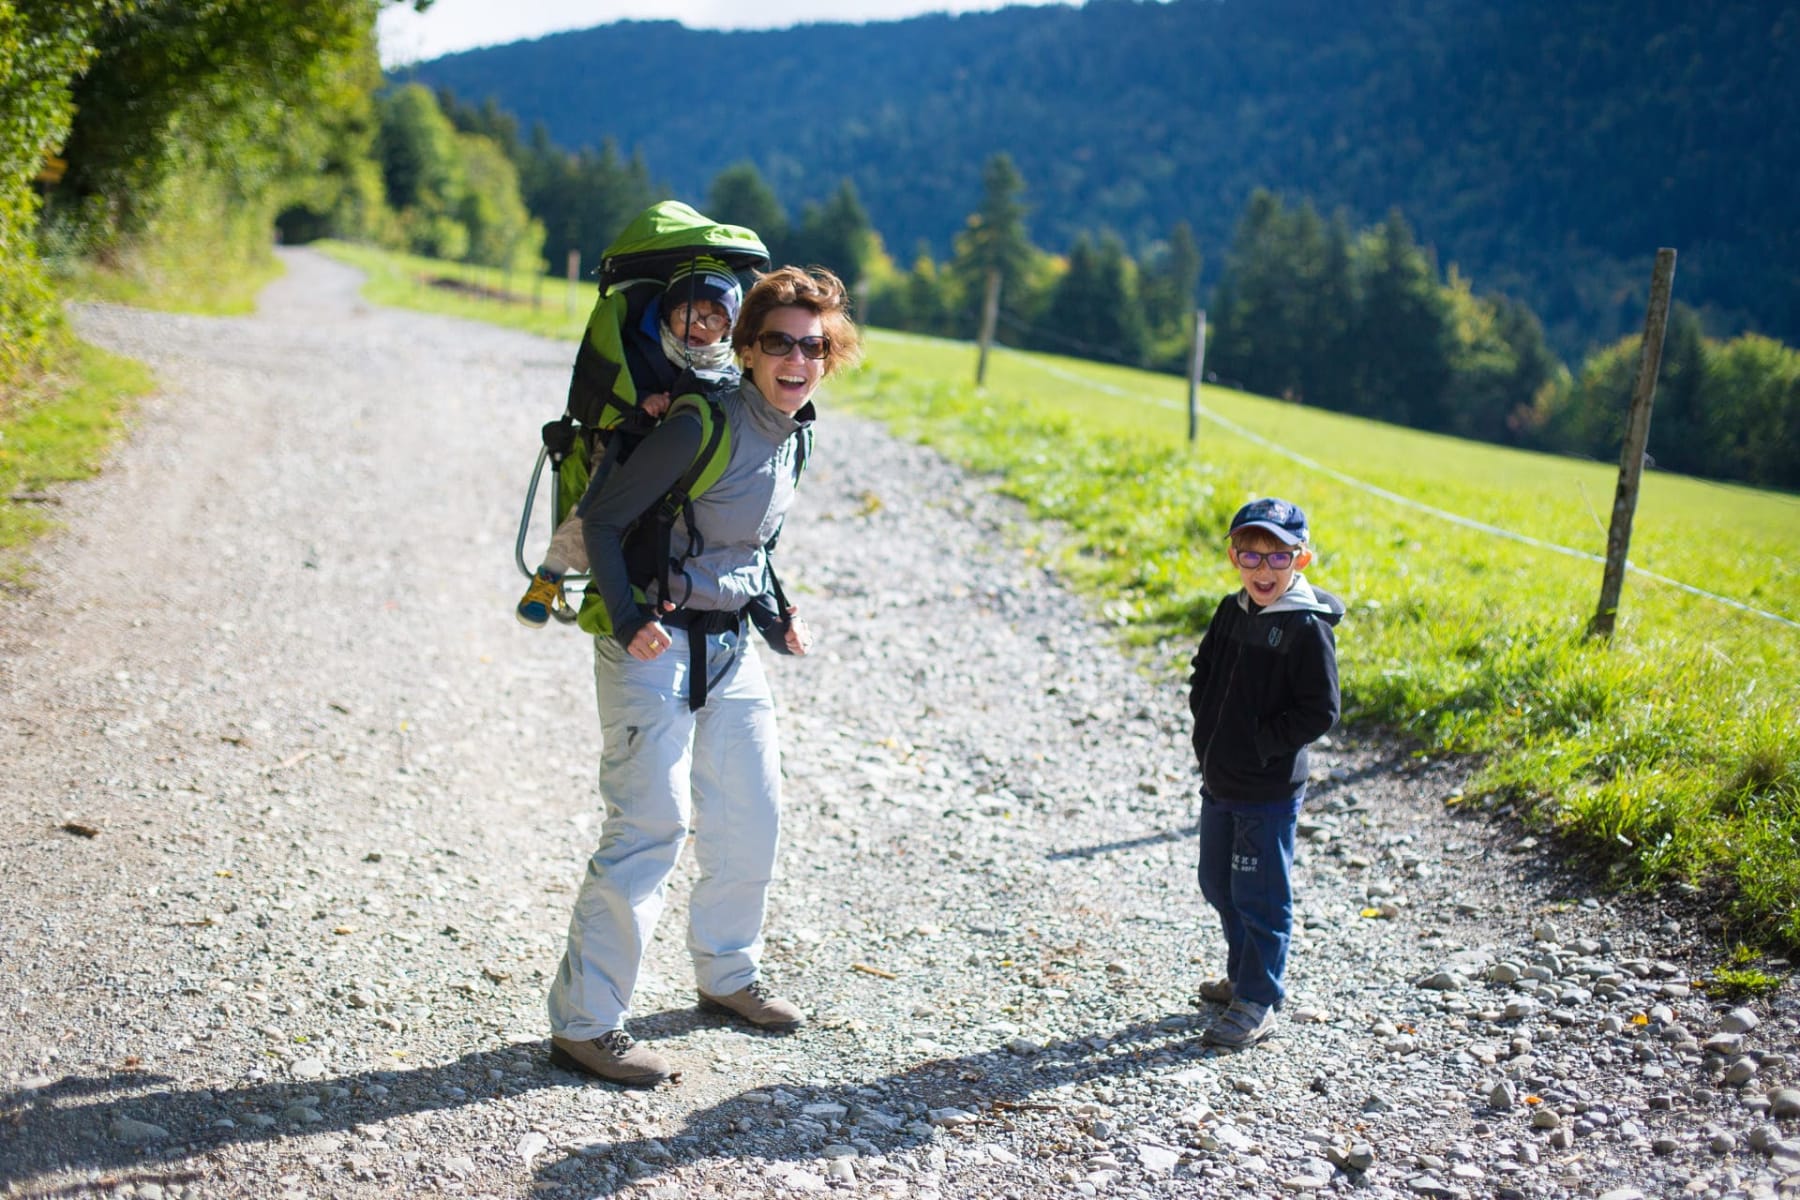 Randonnées famille Chartreuse : maman avec ses deux enfants sur un chemin de randonnée